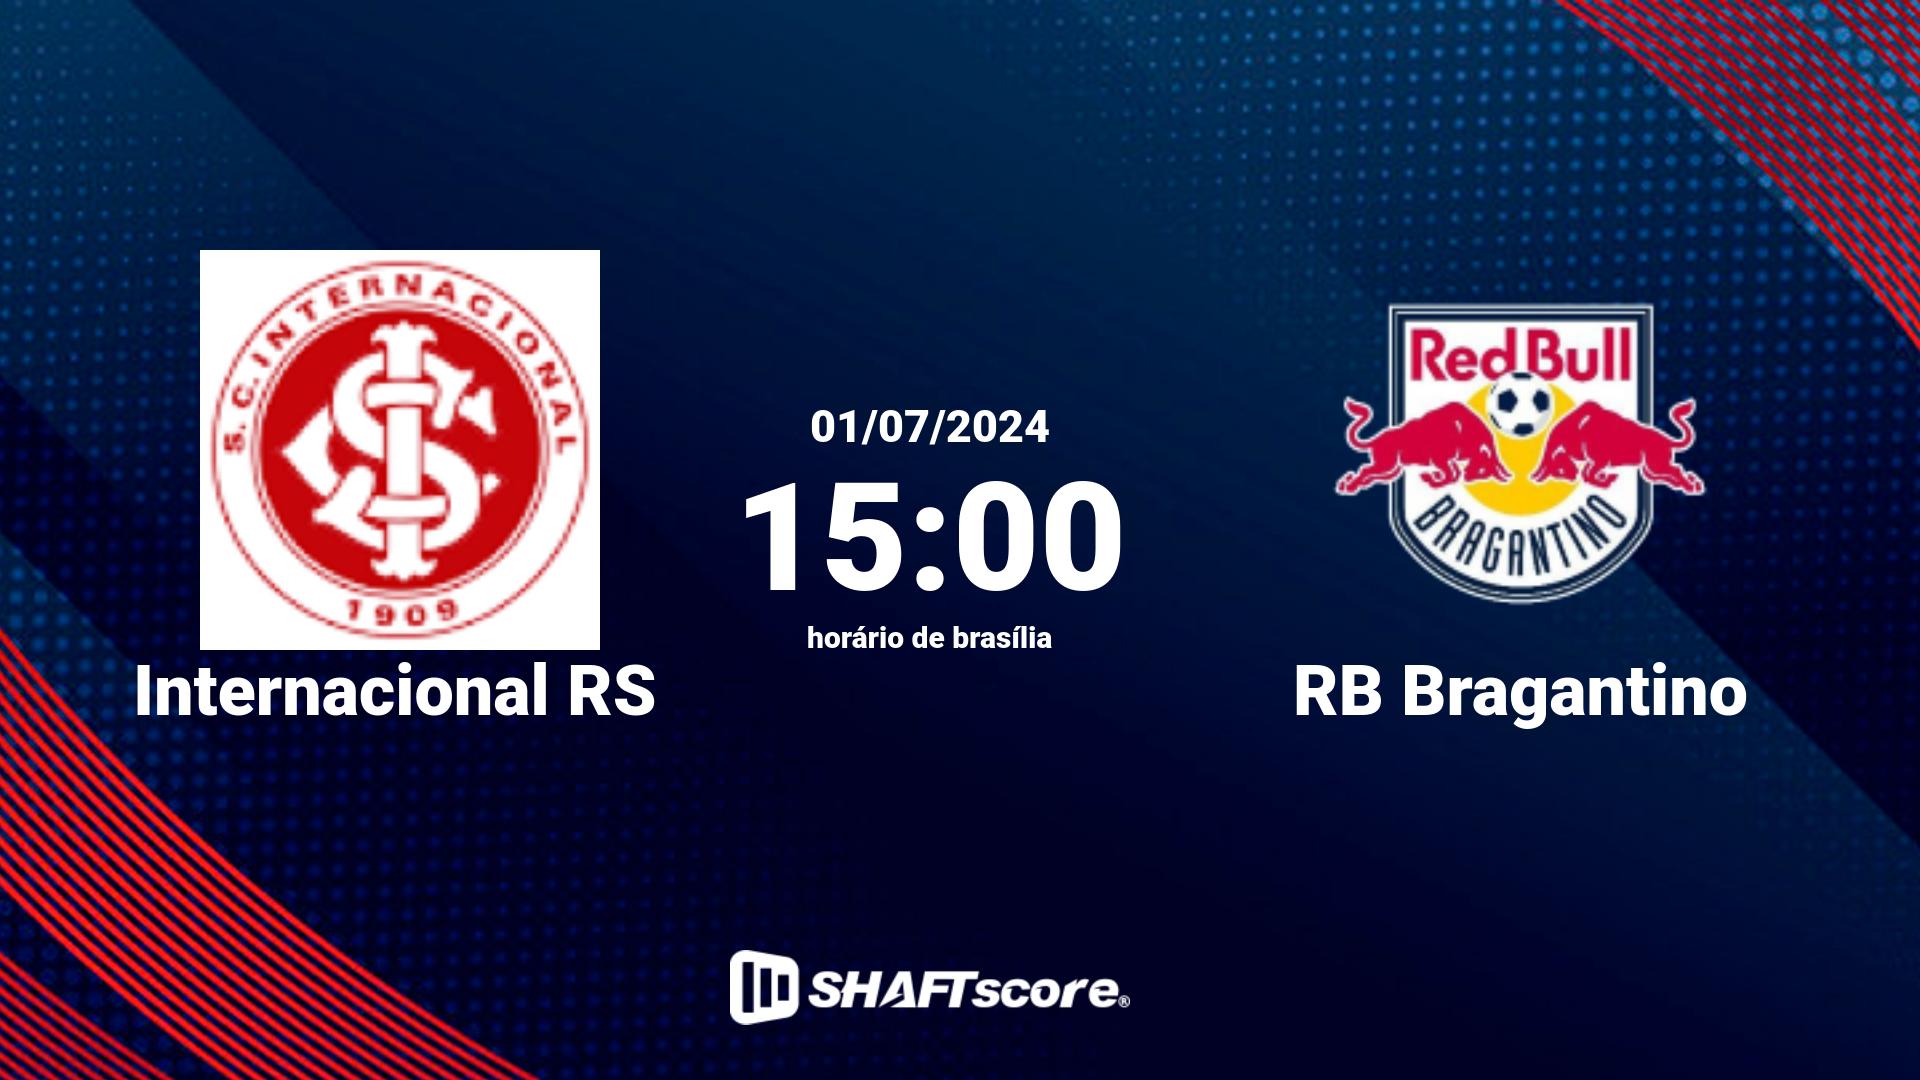 Estatísticas do jogo Internacional RS vs RB Bragantino 19.05 18:30